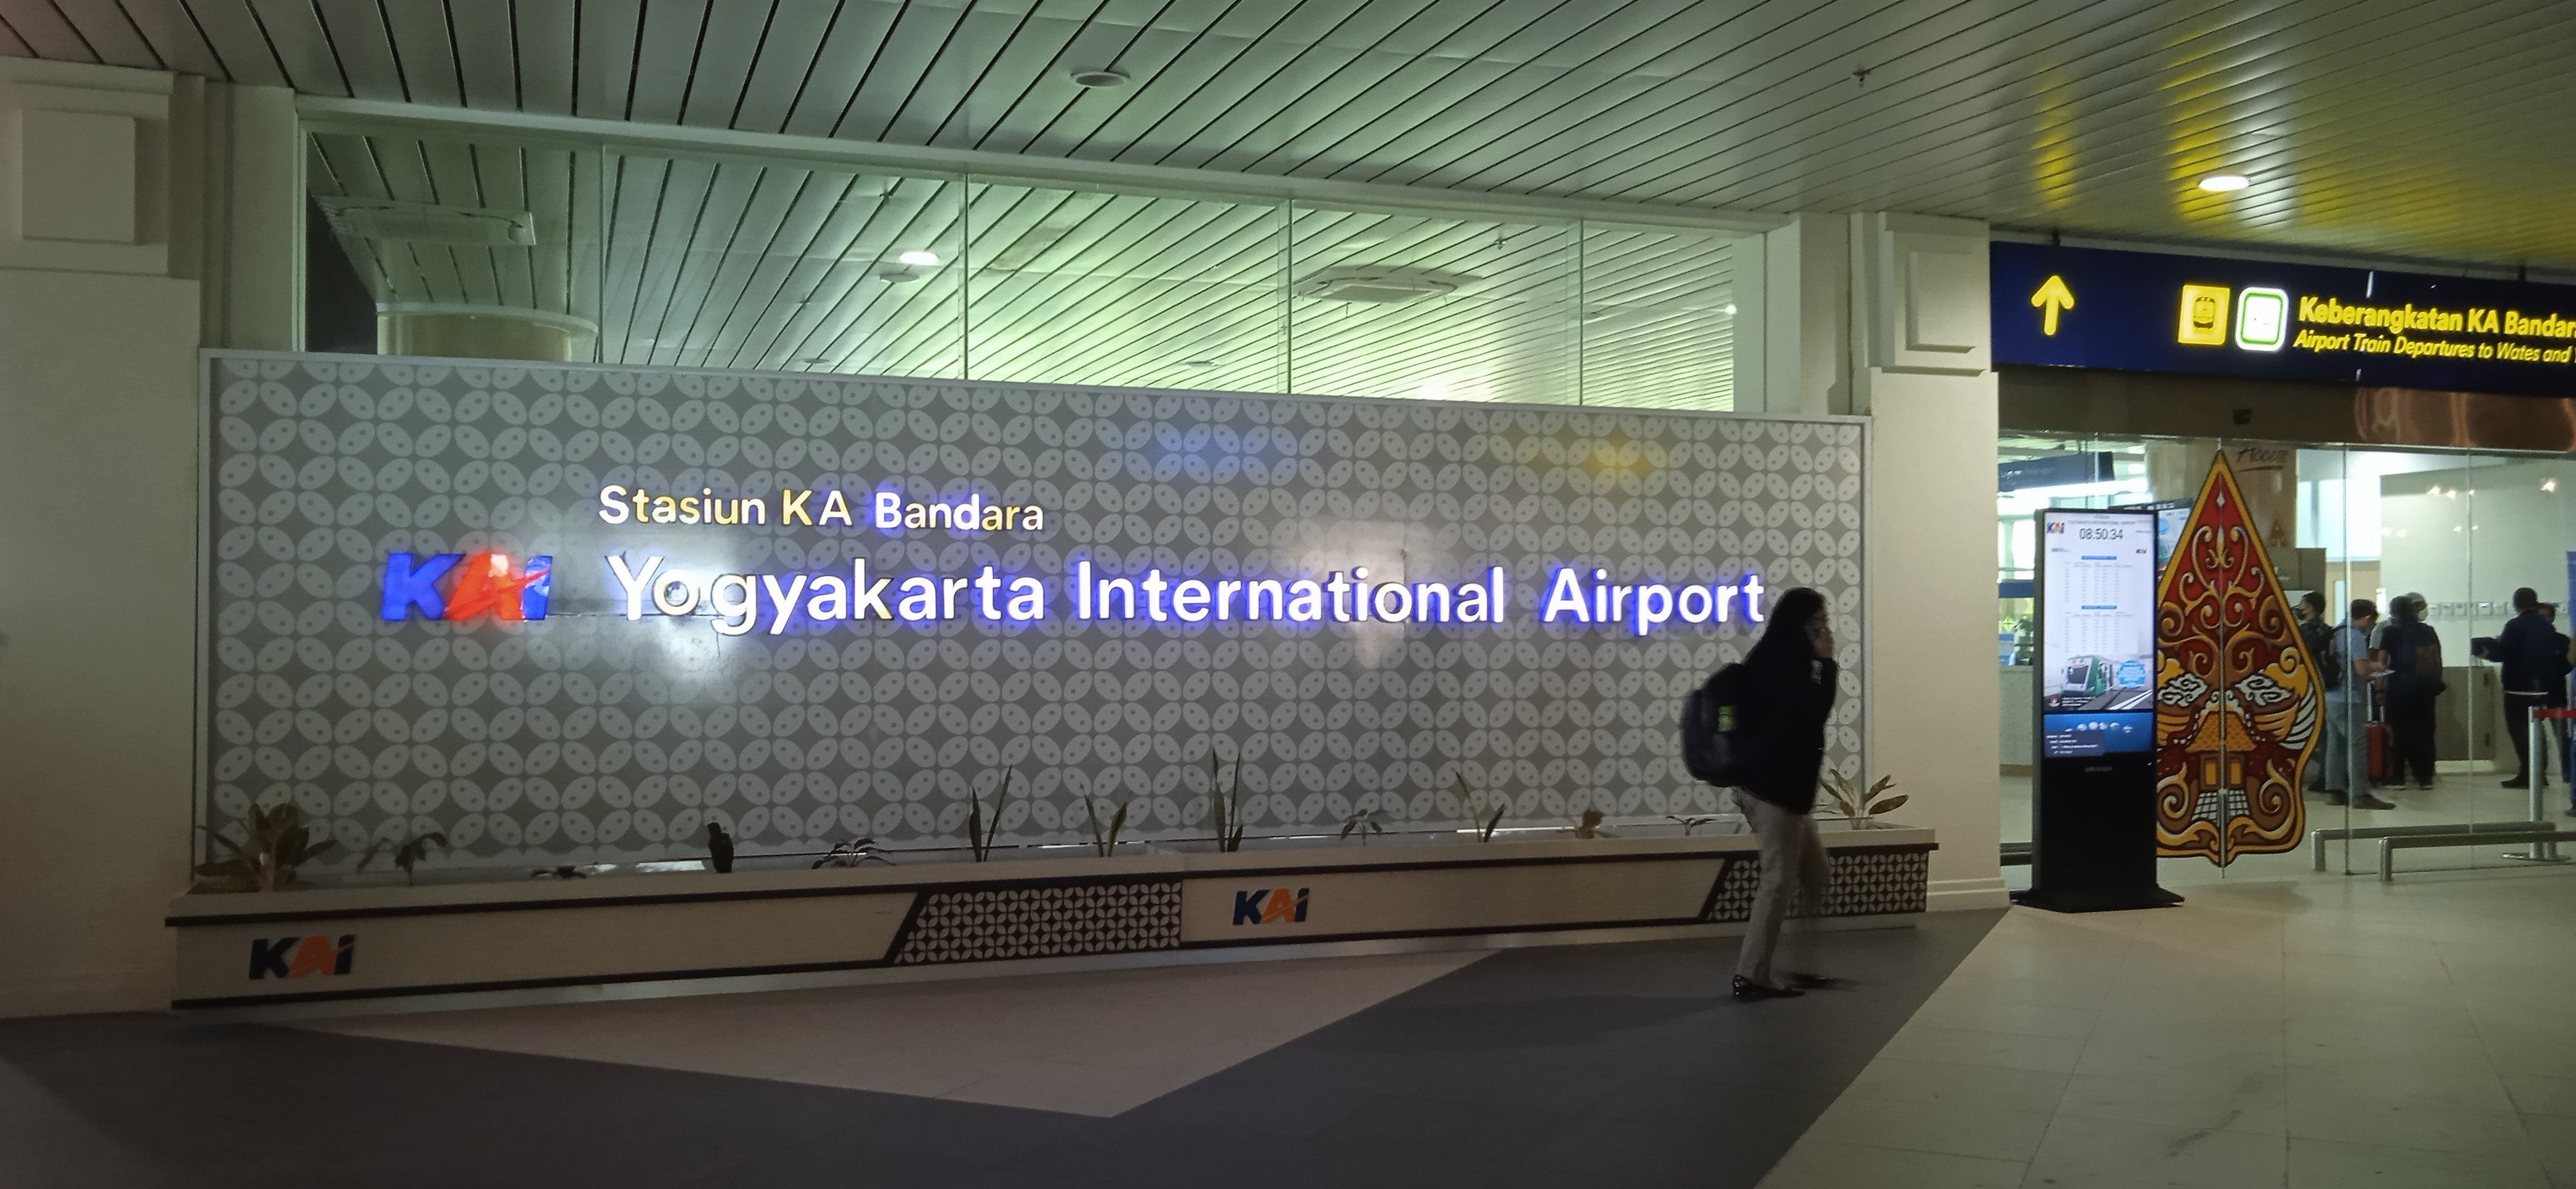 Ini Jadwal dan Tarif Kereta Bandara Yogyakarta, Jumat 1 Juli 2022 